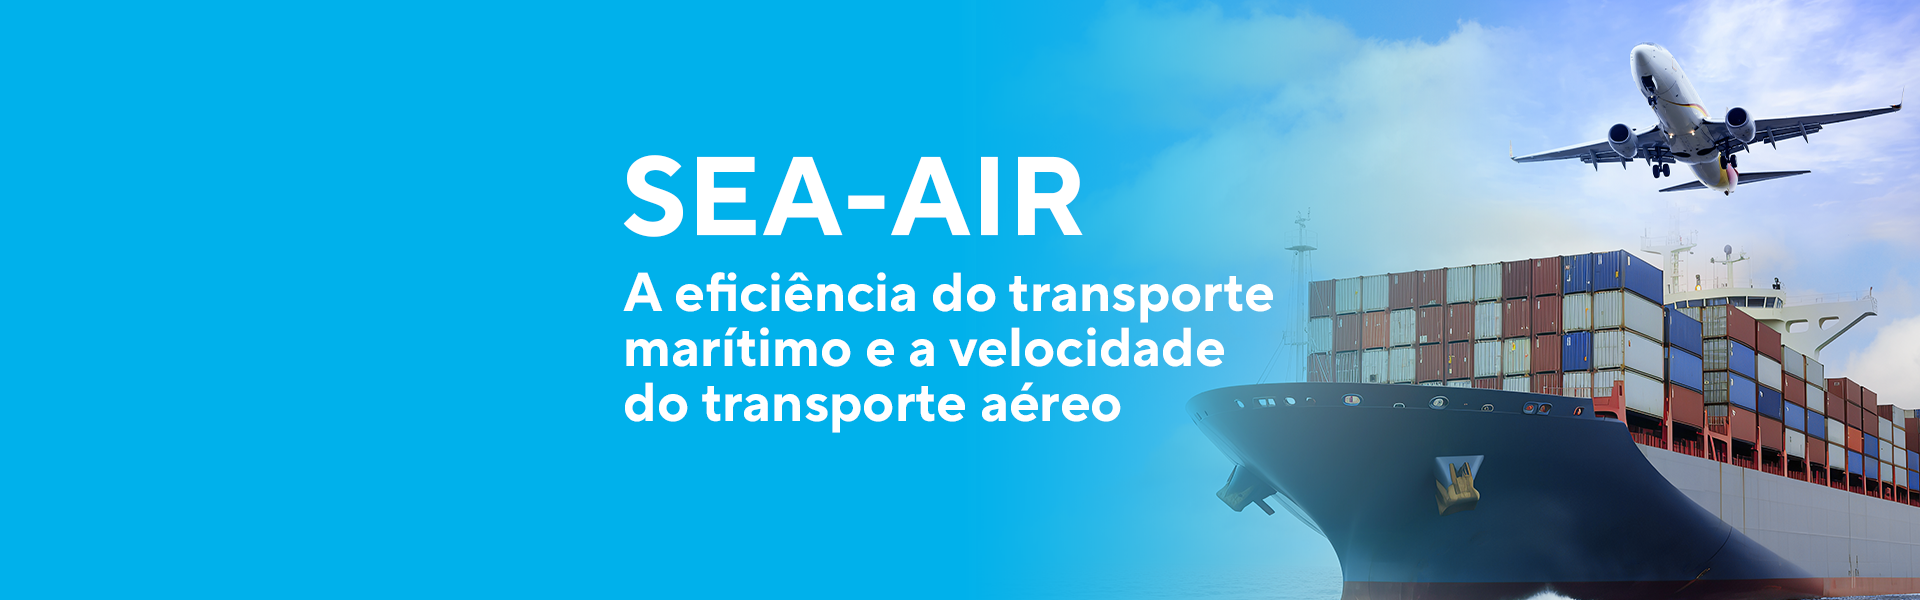 Sea-Air: a eficiência do transporte marítimo e a velocidade do transporte aéreo